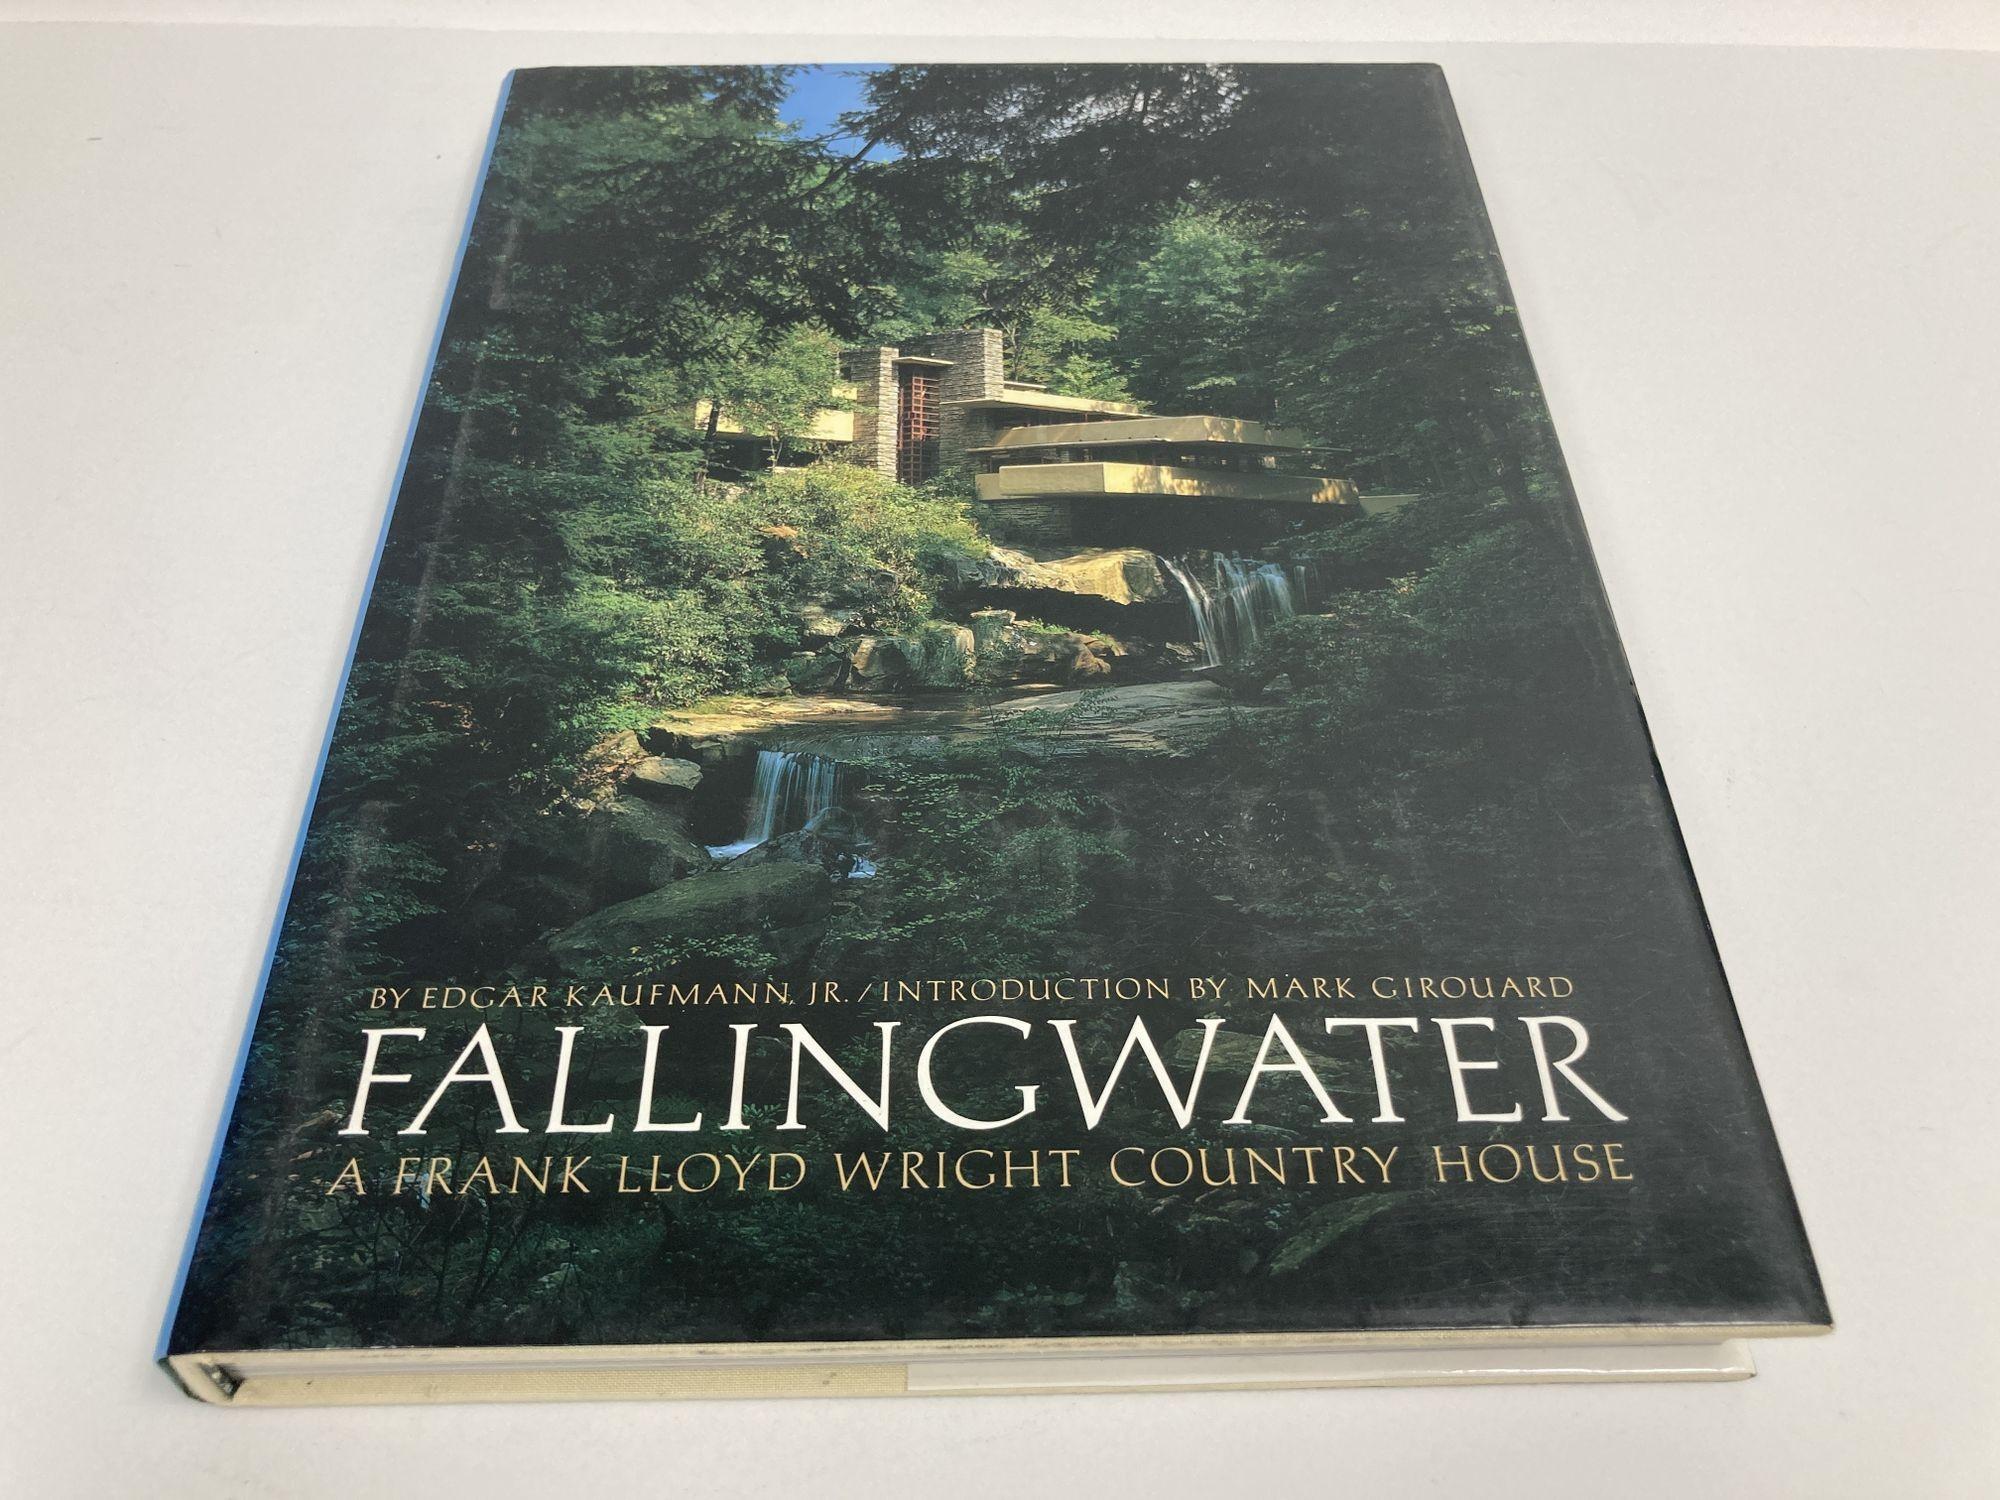 Fallingwater - ein Landhaus von Frank Lloyd Wright.
Vintage 1986 1st Edition Modernism Architecture Large Hardcover Book.
ABMESSUNGEN: 9,75 